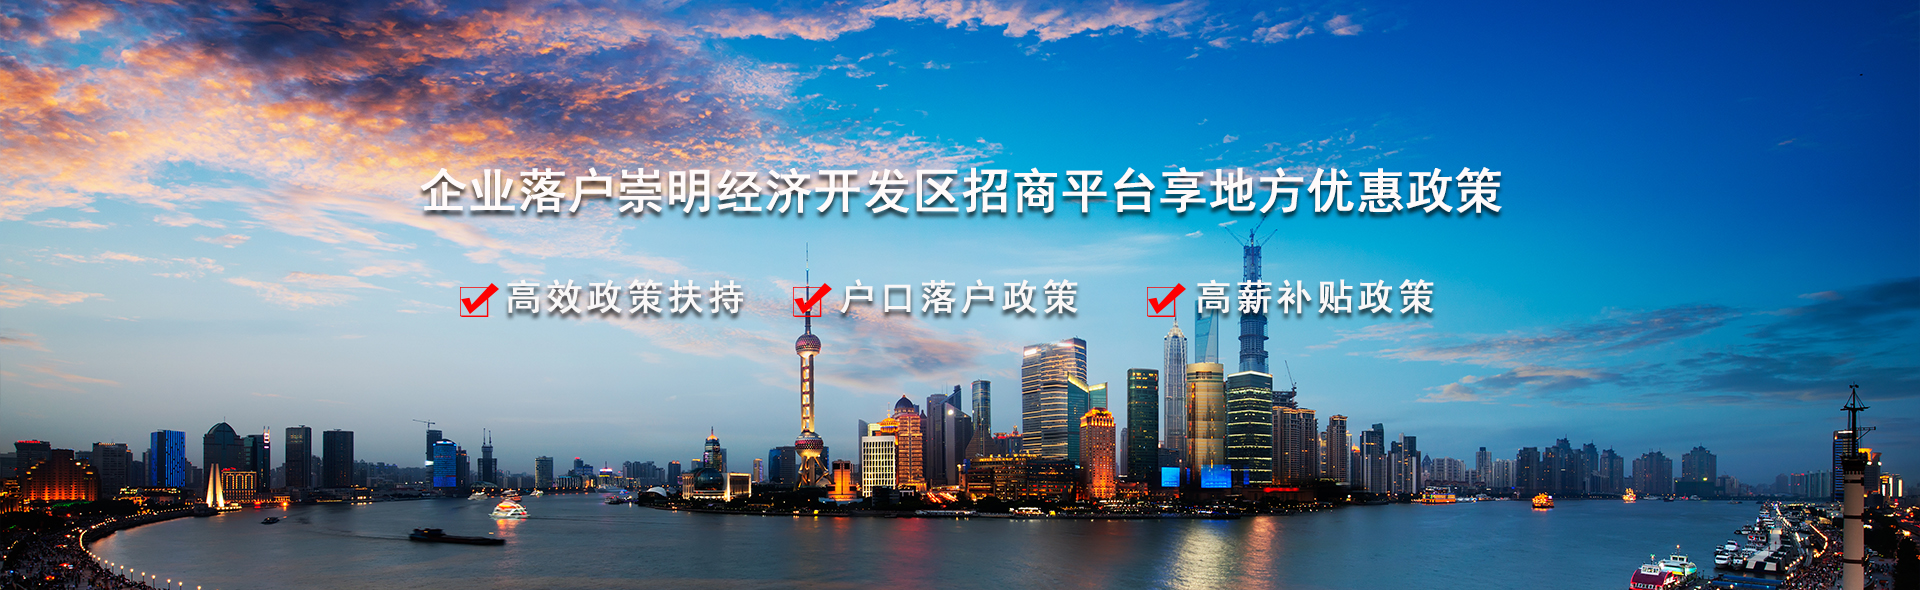 上海市崇明区经济开发区高额退税政策服务